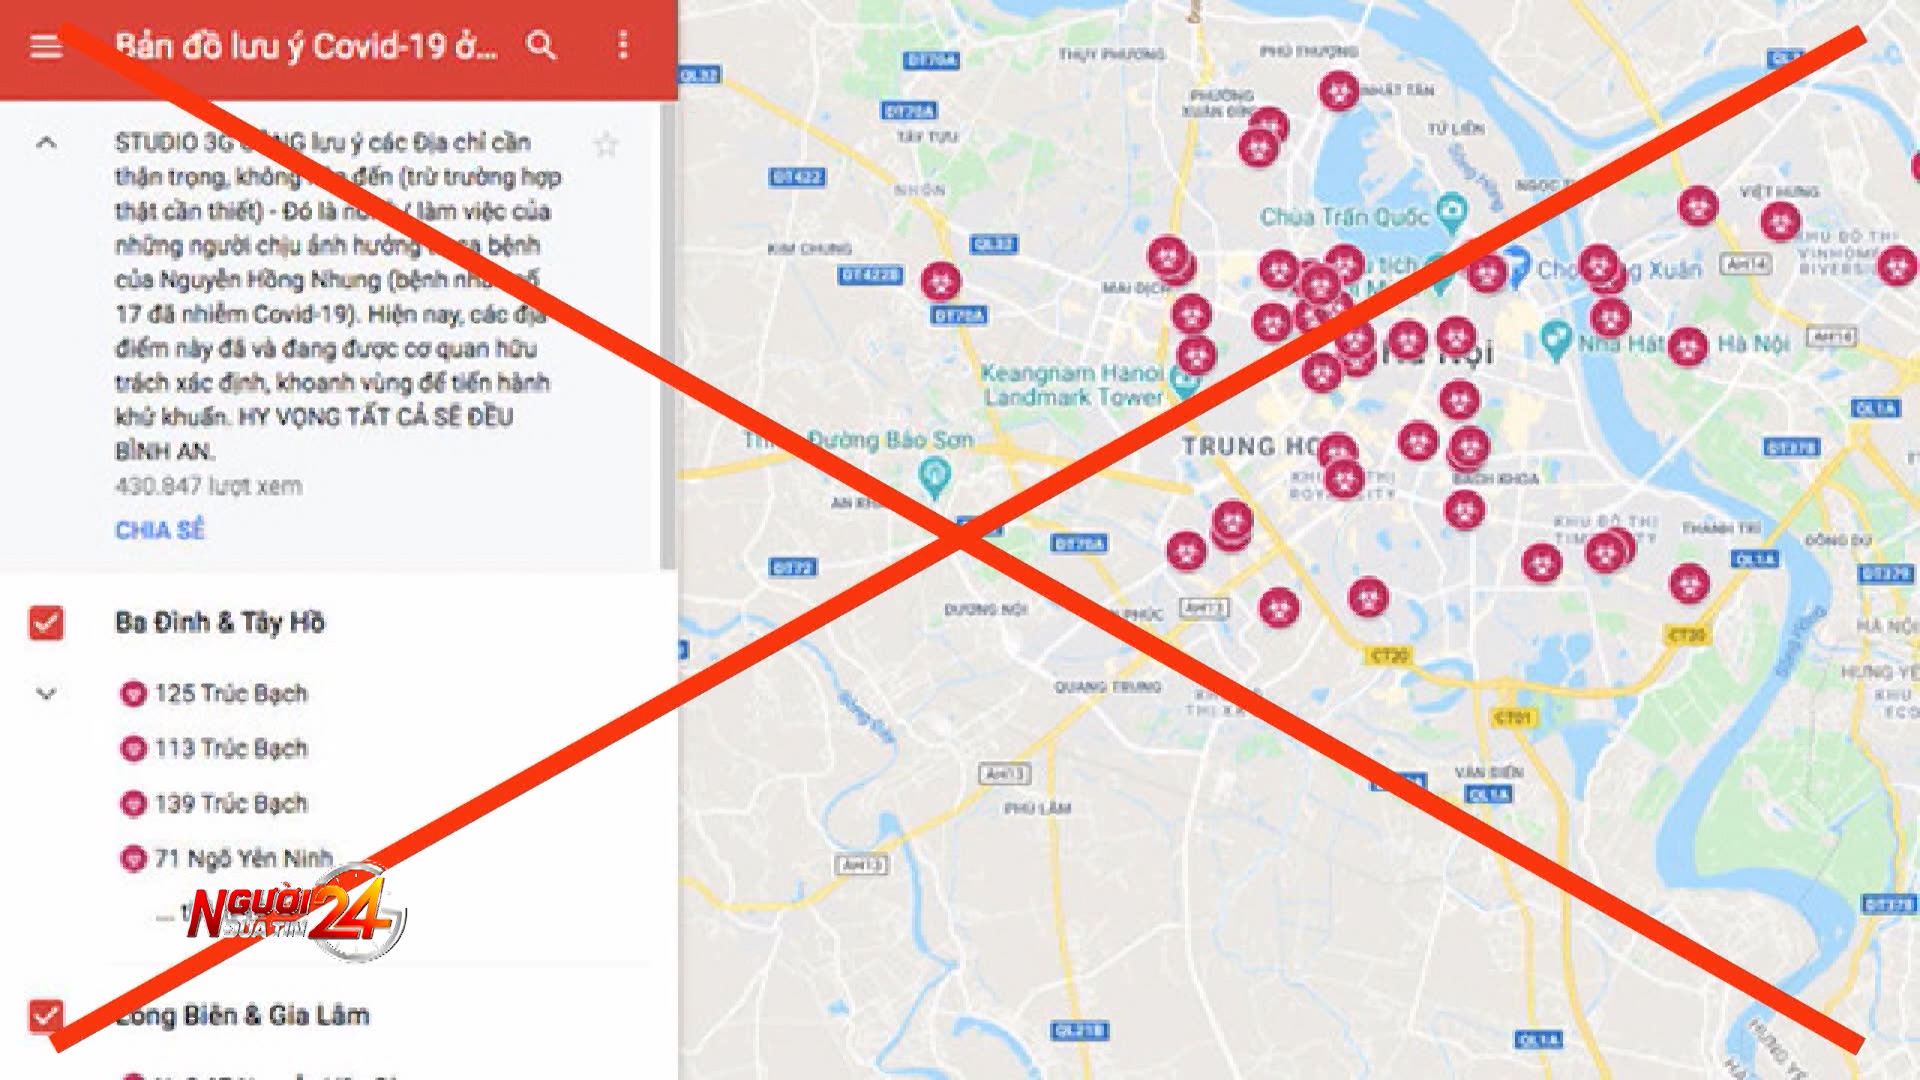 Sự thật về bản đồ dịch Covid-19 tại Hà Nội trên mạng ...